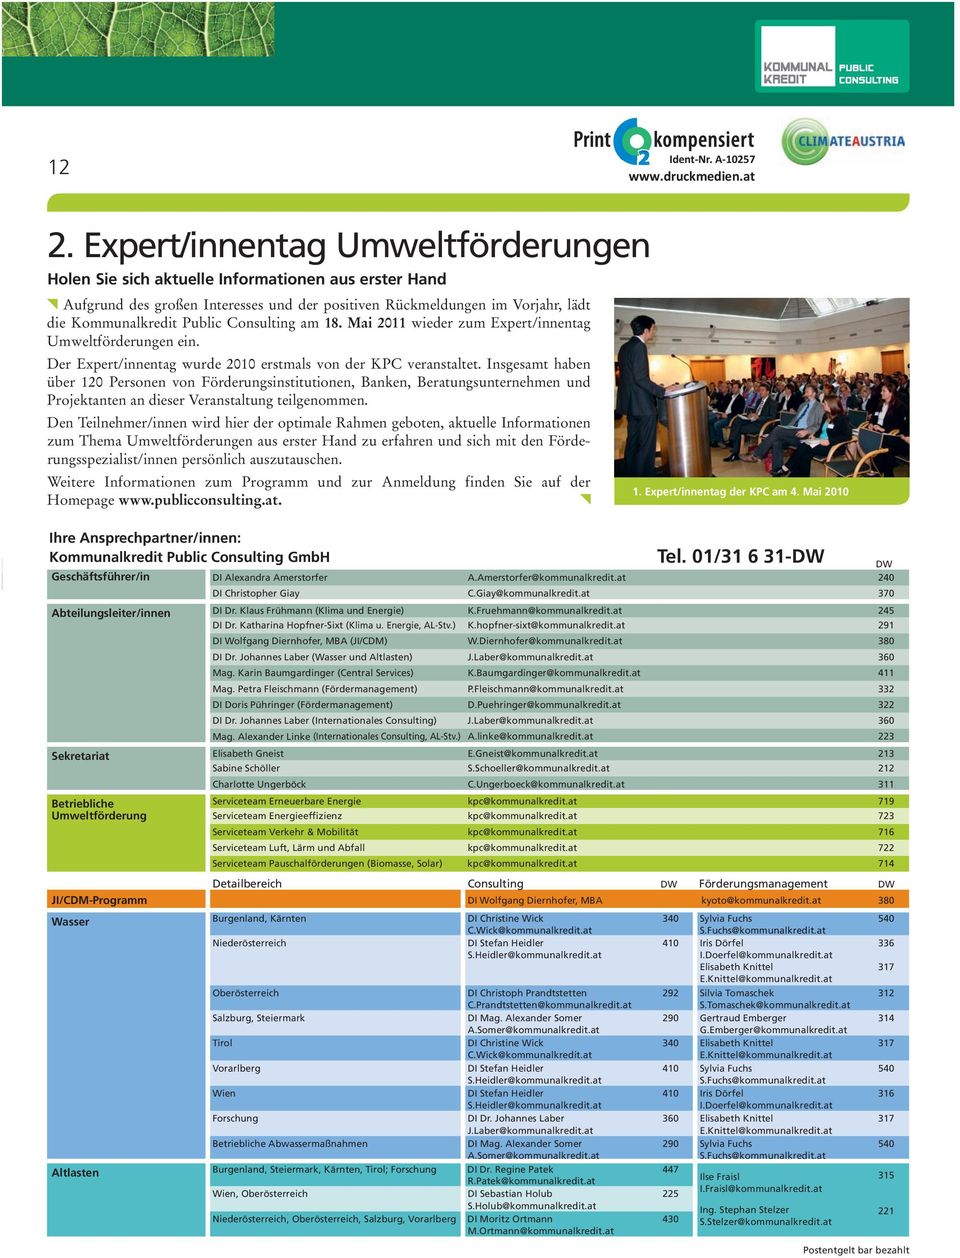 Consulting am 18. Mai 2011 wieder zum Expert/innentag Umweltförderungen ein. Der Expert/innentag wurde 2010 erstmals von der KPC veranstaltet.